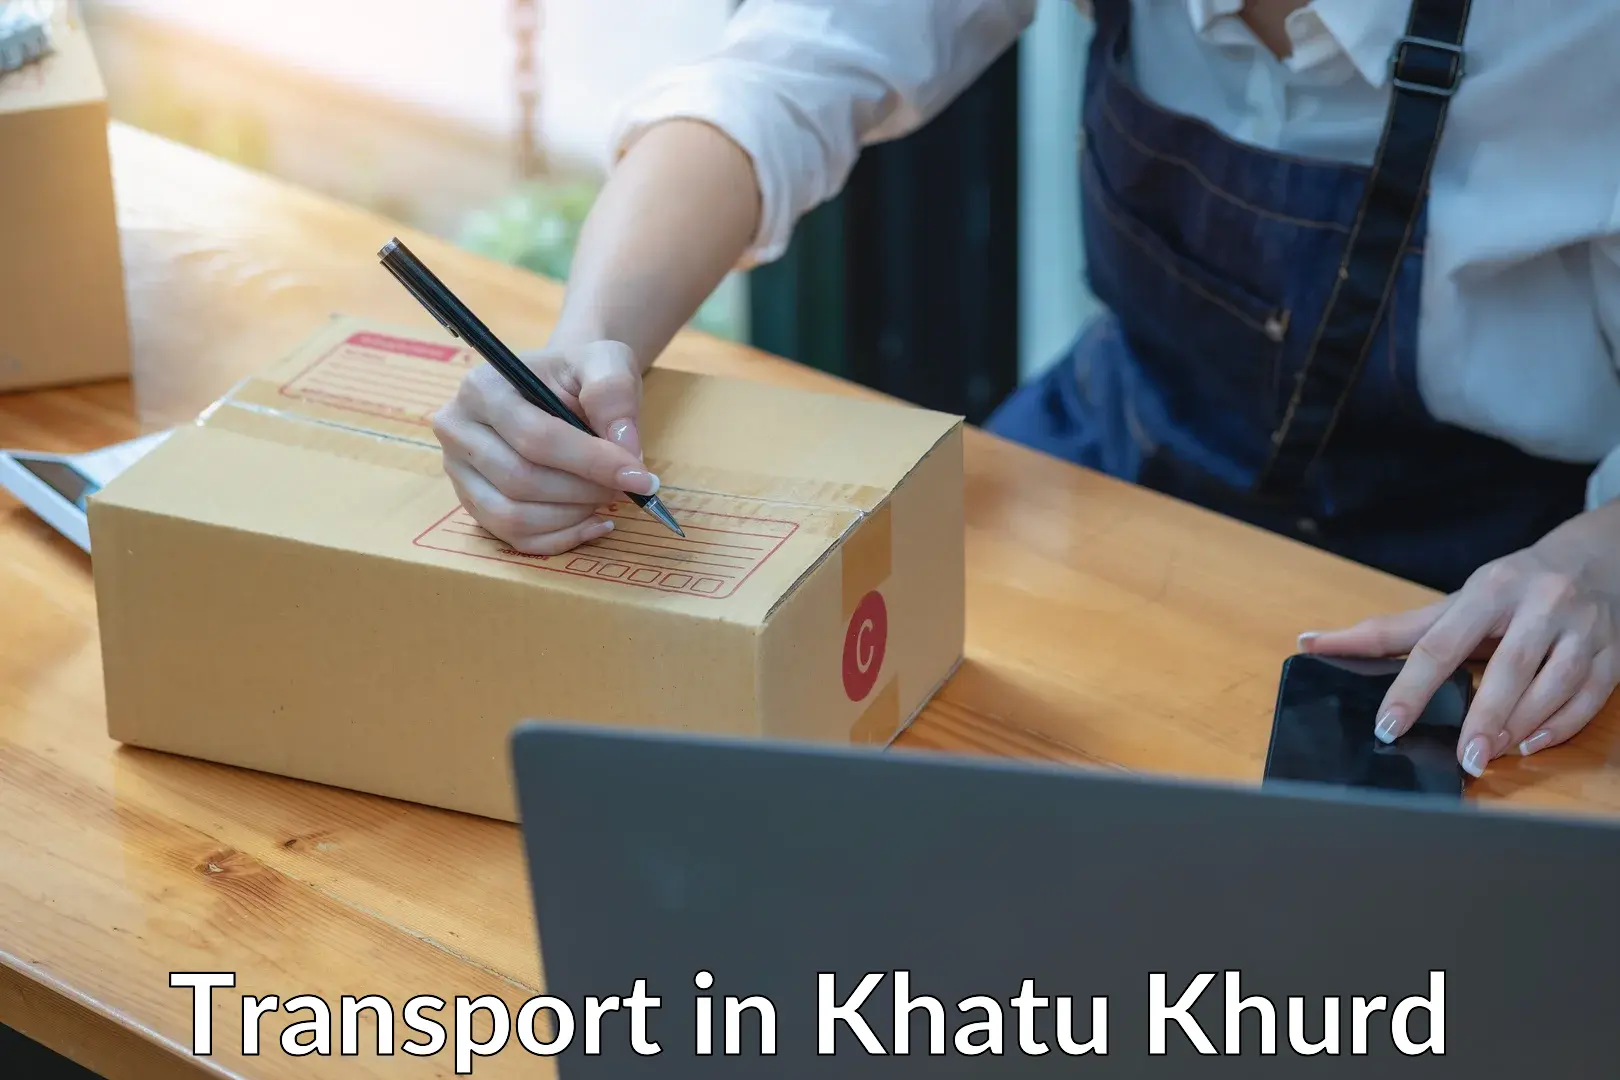 Furniture transport service in Khatu Khurd